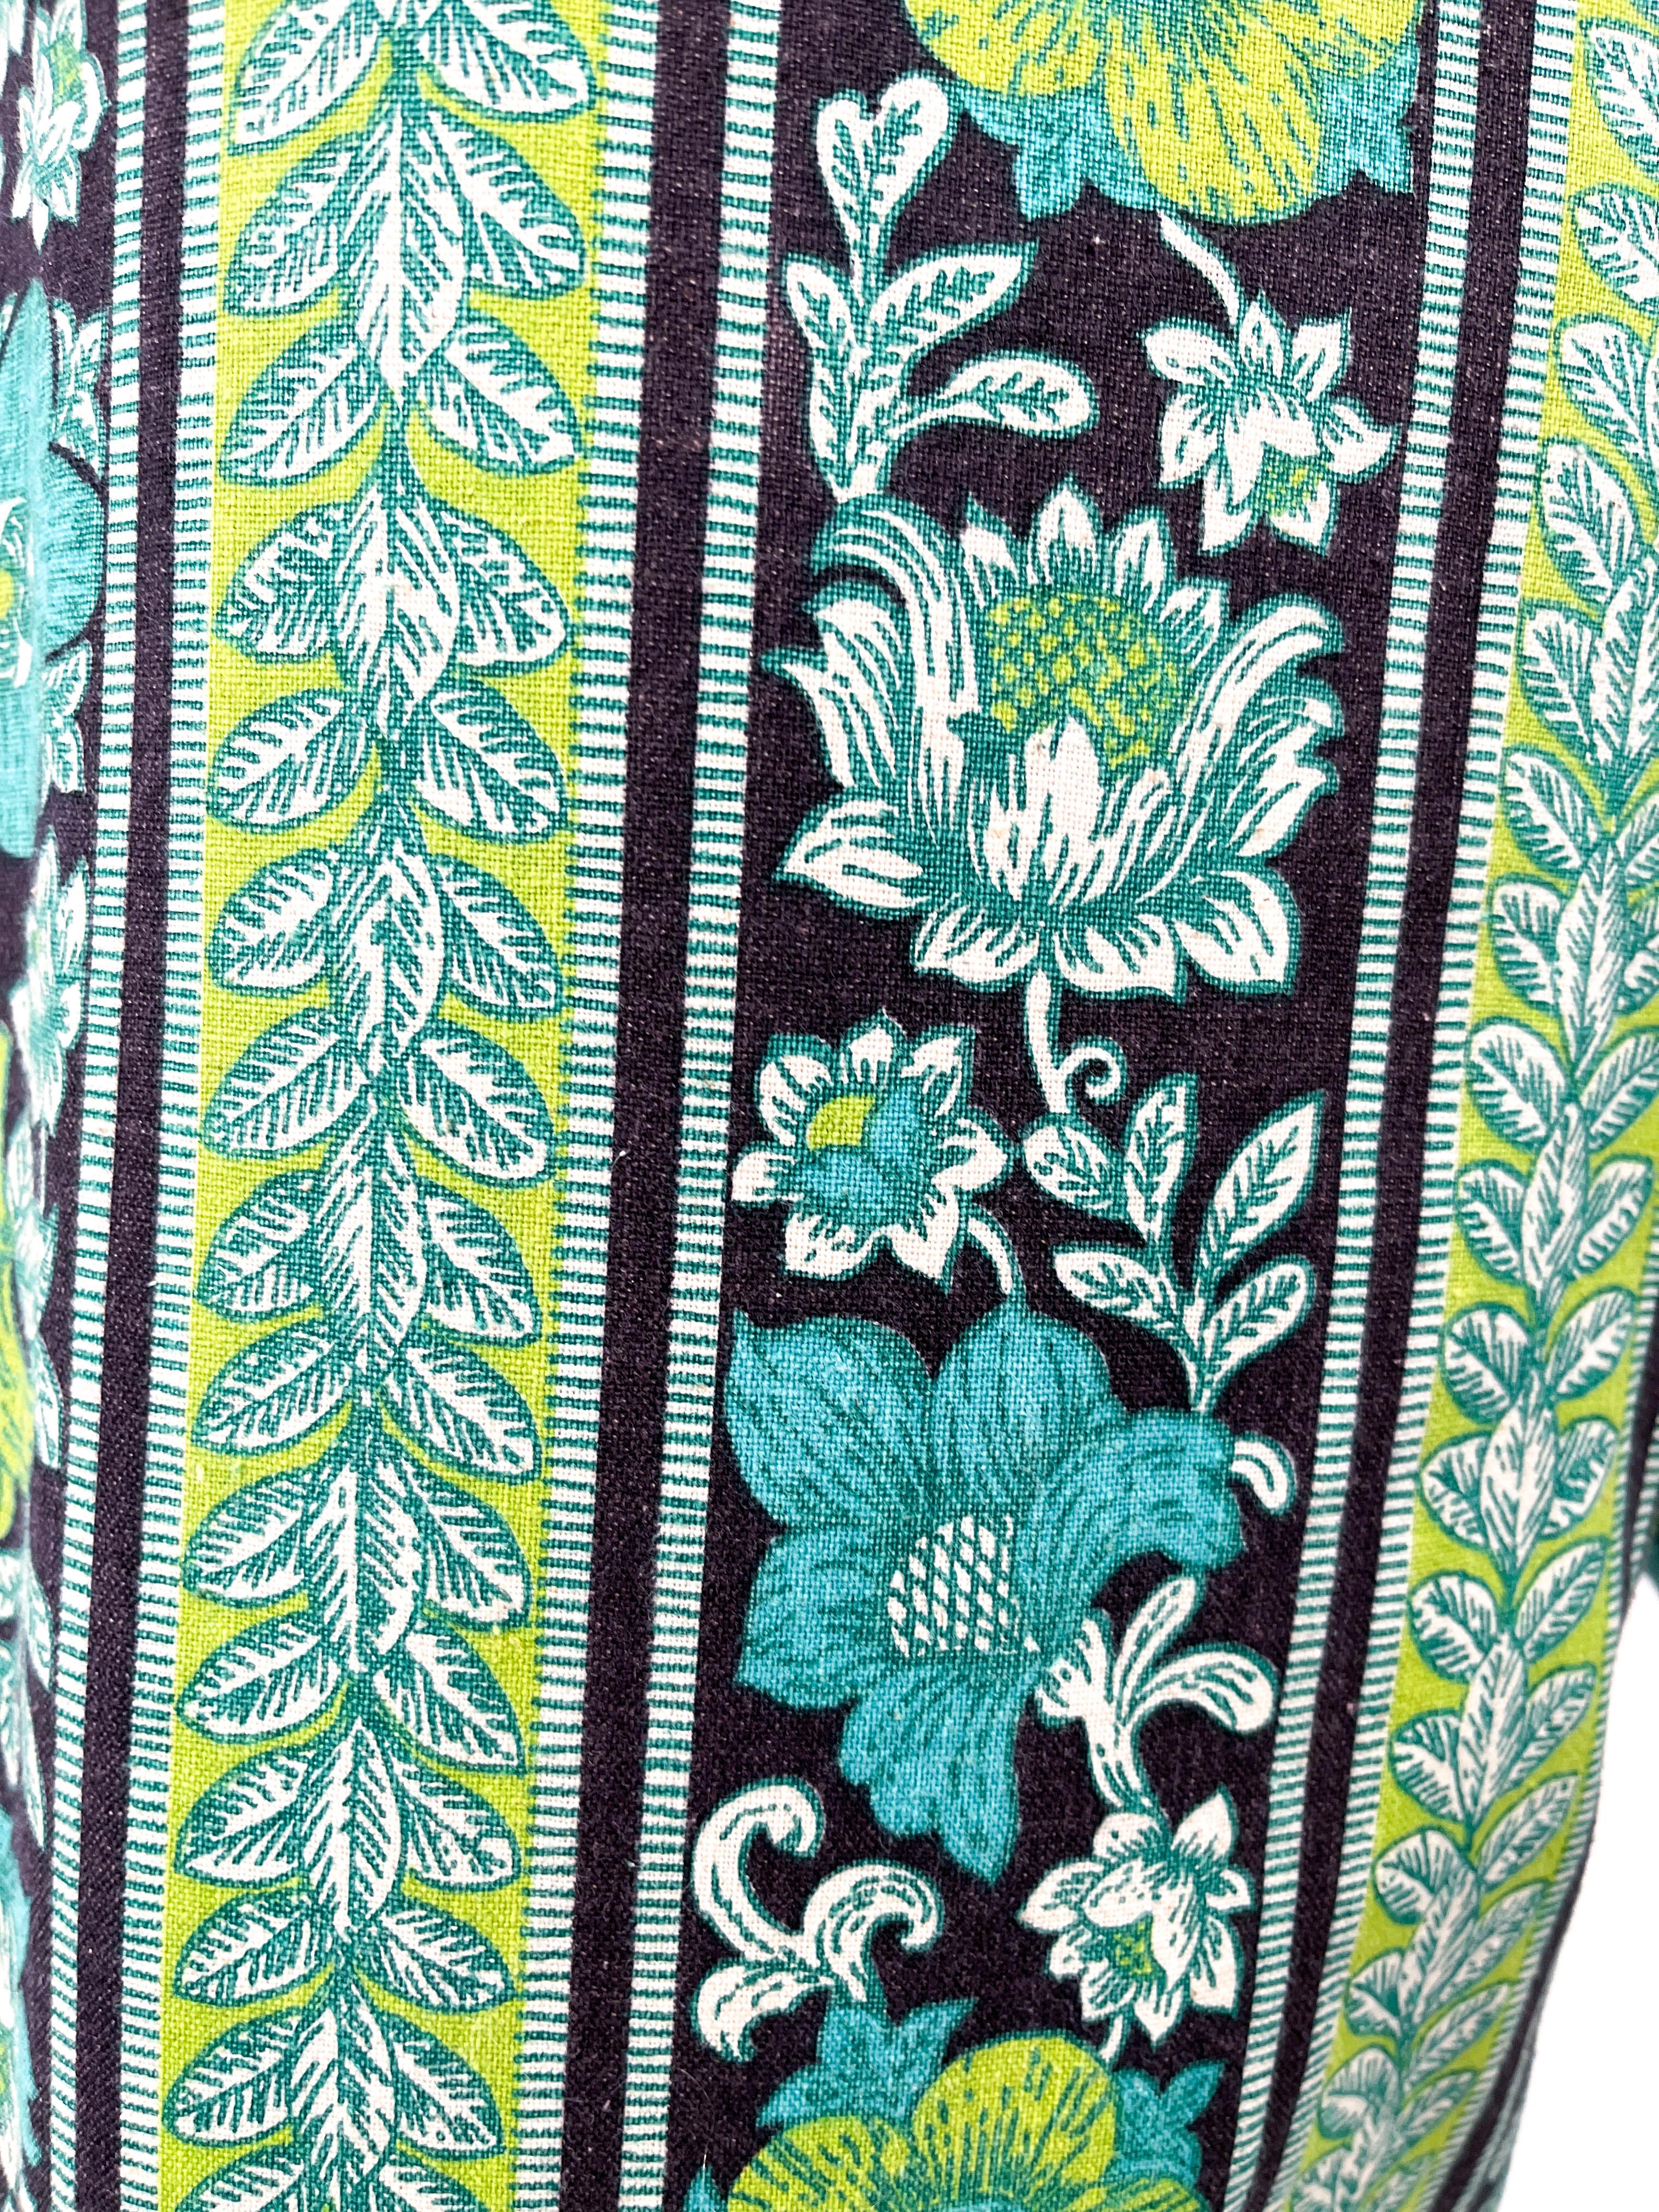 Psychedelisch bedruckte Schlag- und Bundhose aus den 1960er Jahren. Der florale, psychedelische Druck zeigt neongrüne, blaugrüne, schwarze und weiße, gestreifte Motive. Die niedrig geschnittene Taille hat passende Gürtelschlaufen und einen